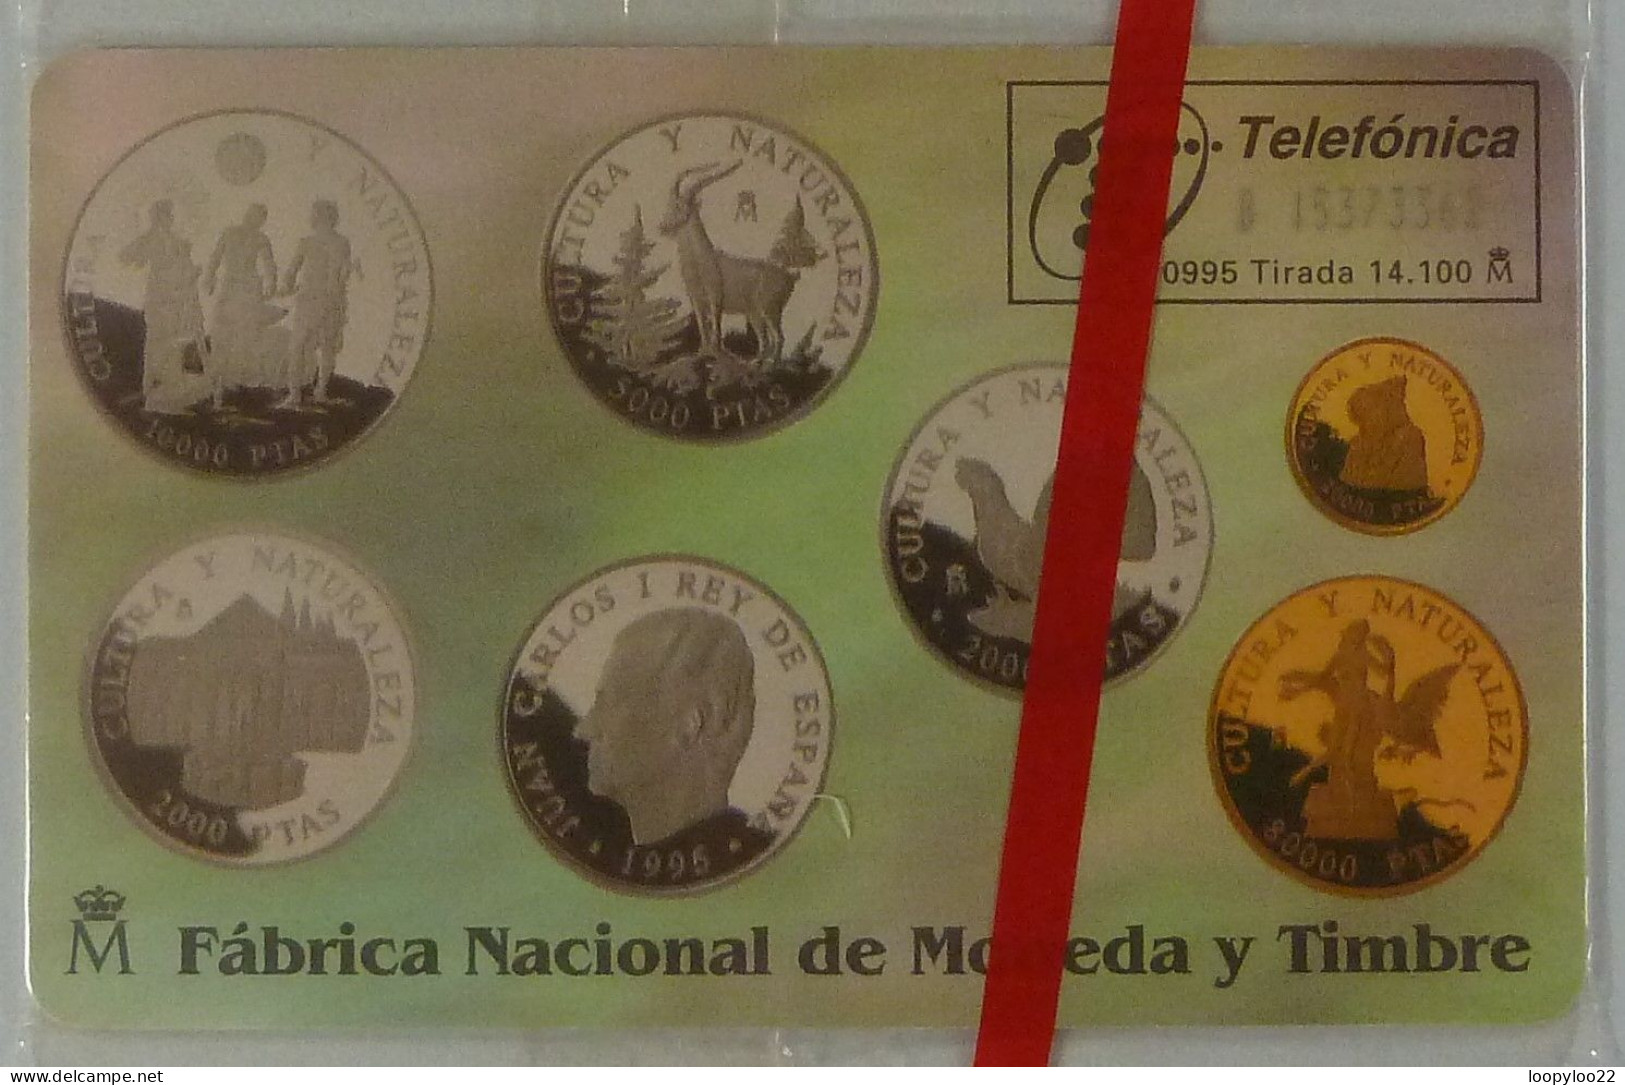 SPAIN - Chip - 100 Units - P-151 - Monedas Conmemoratives II - 09/95 - 14100ex - Mint Blister - Privé-uitgaven